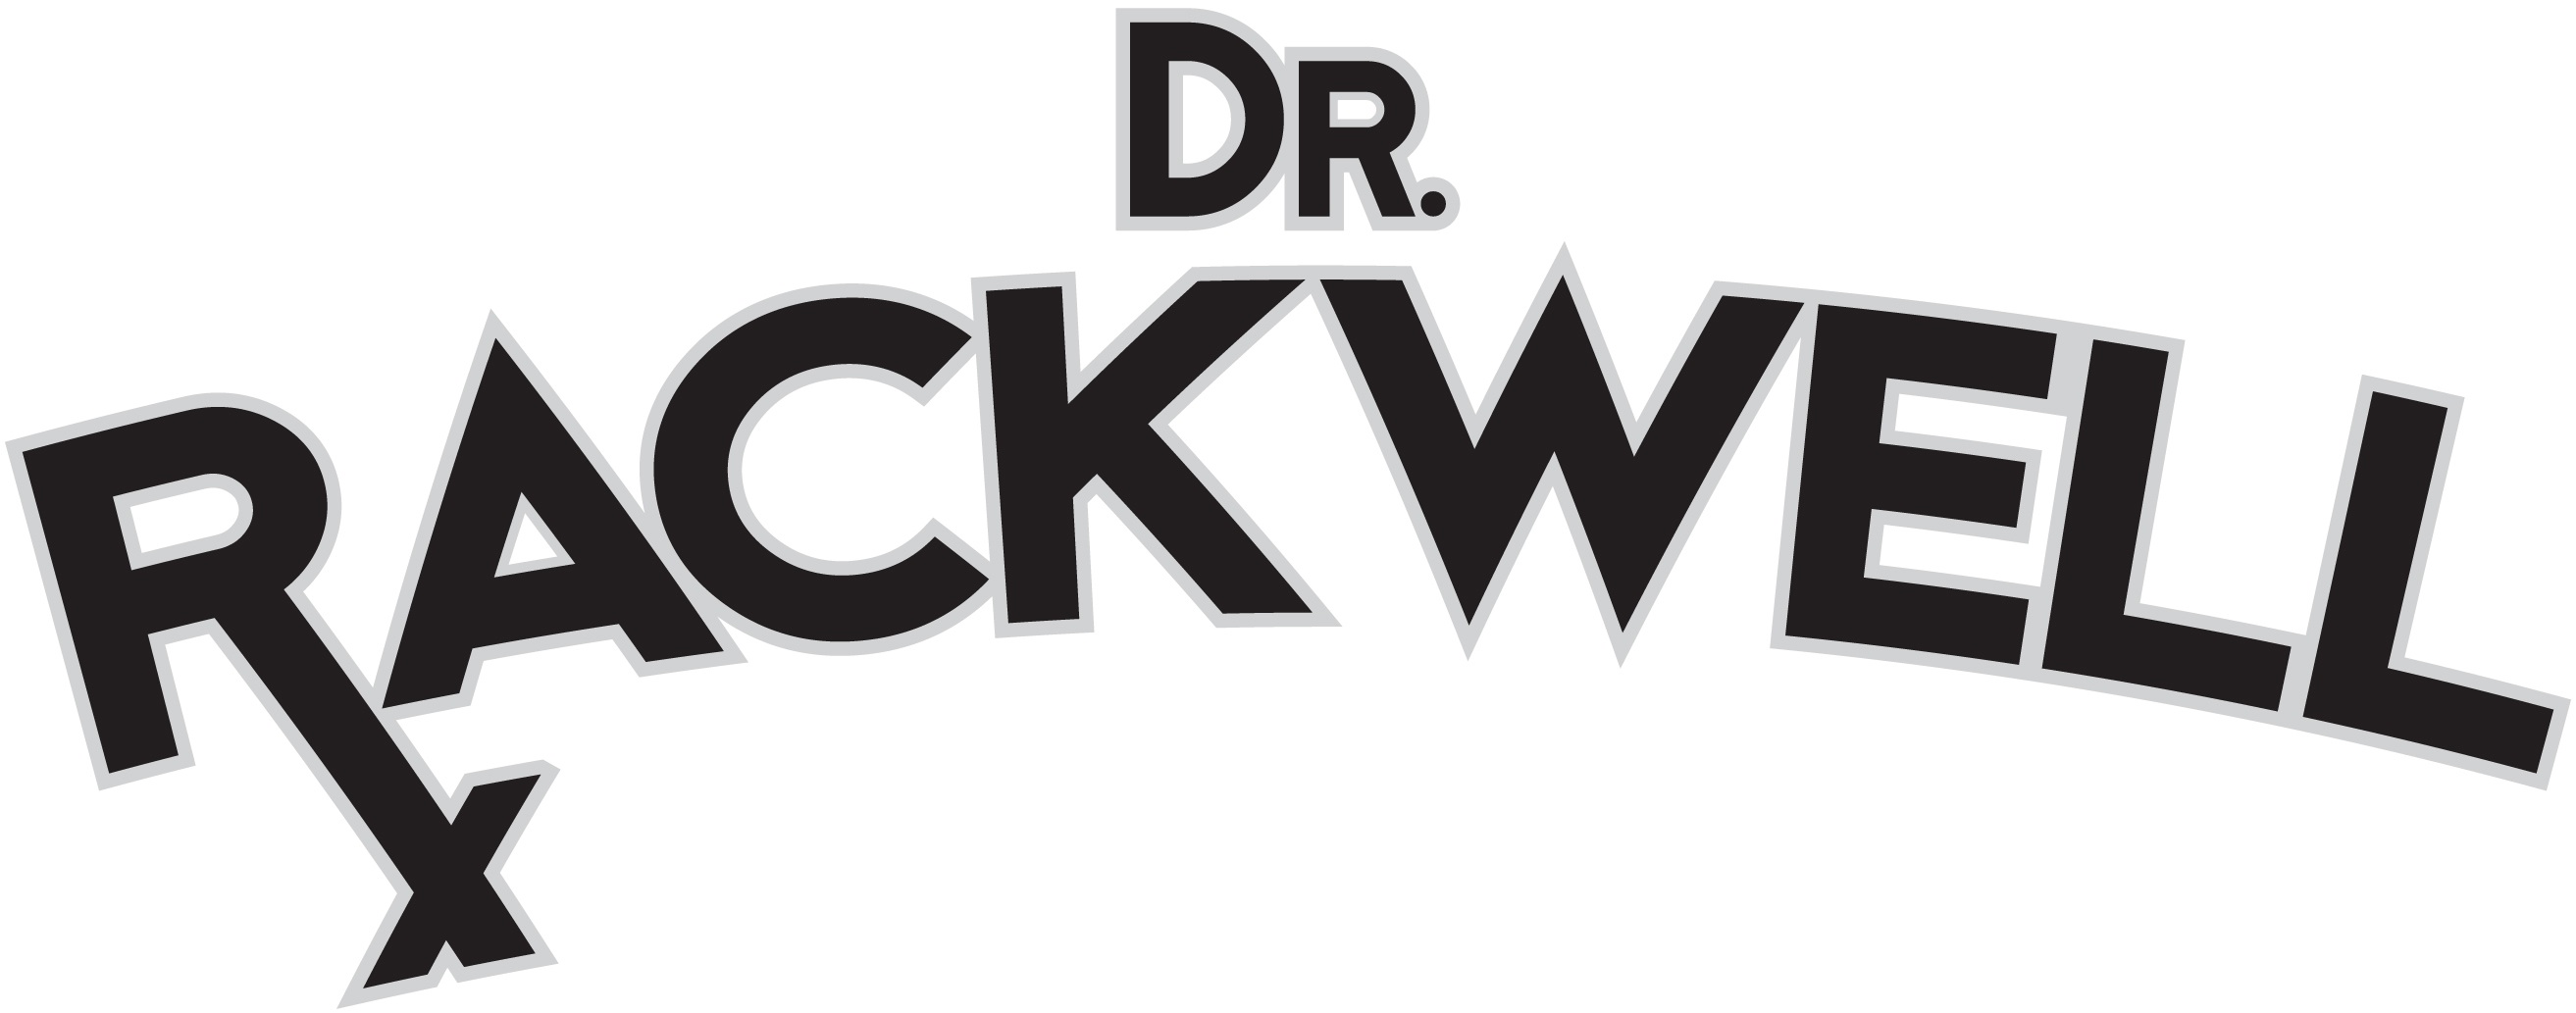 Dr.Rackwell_logo1